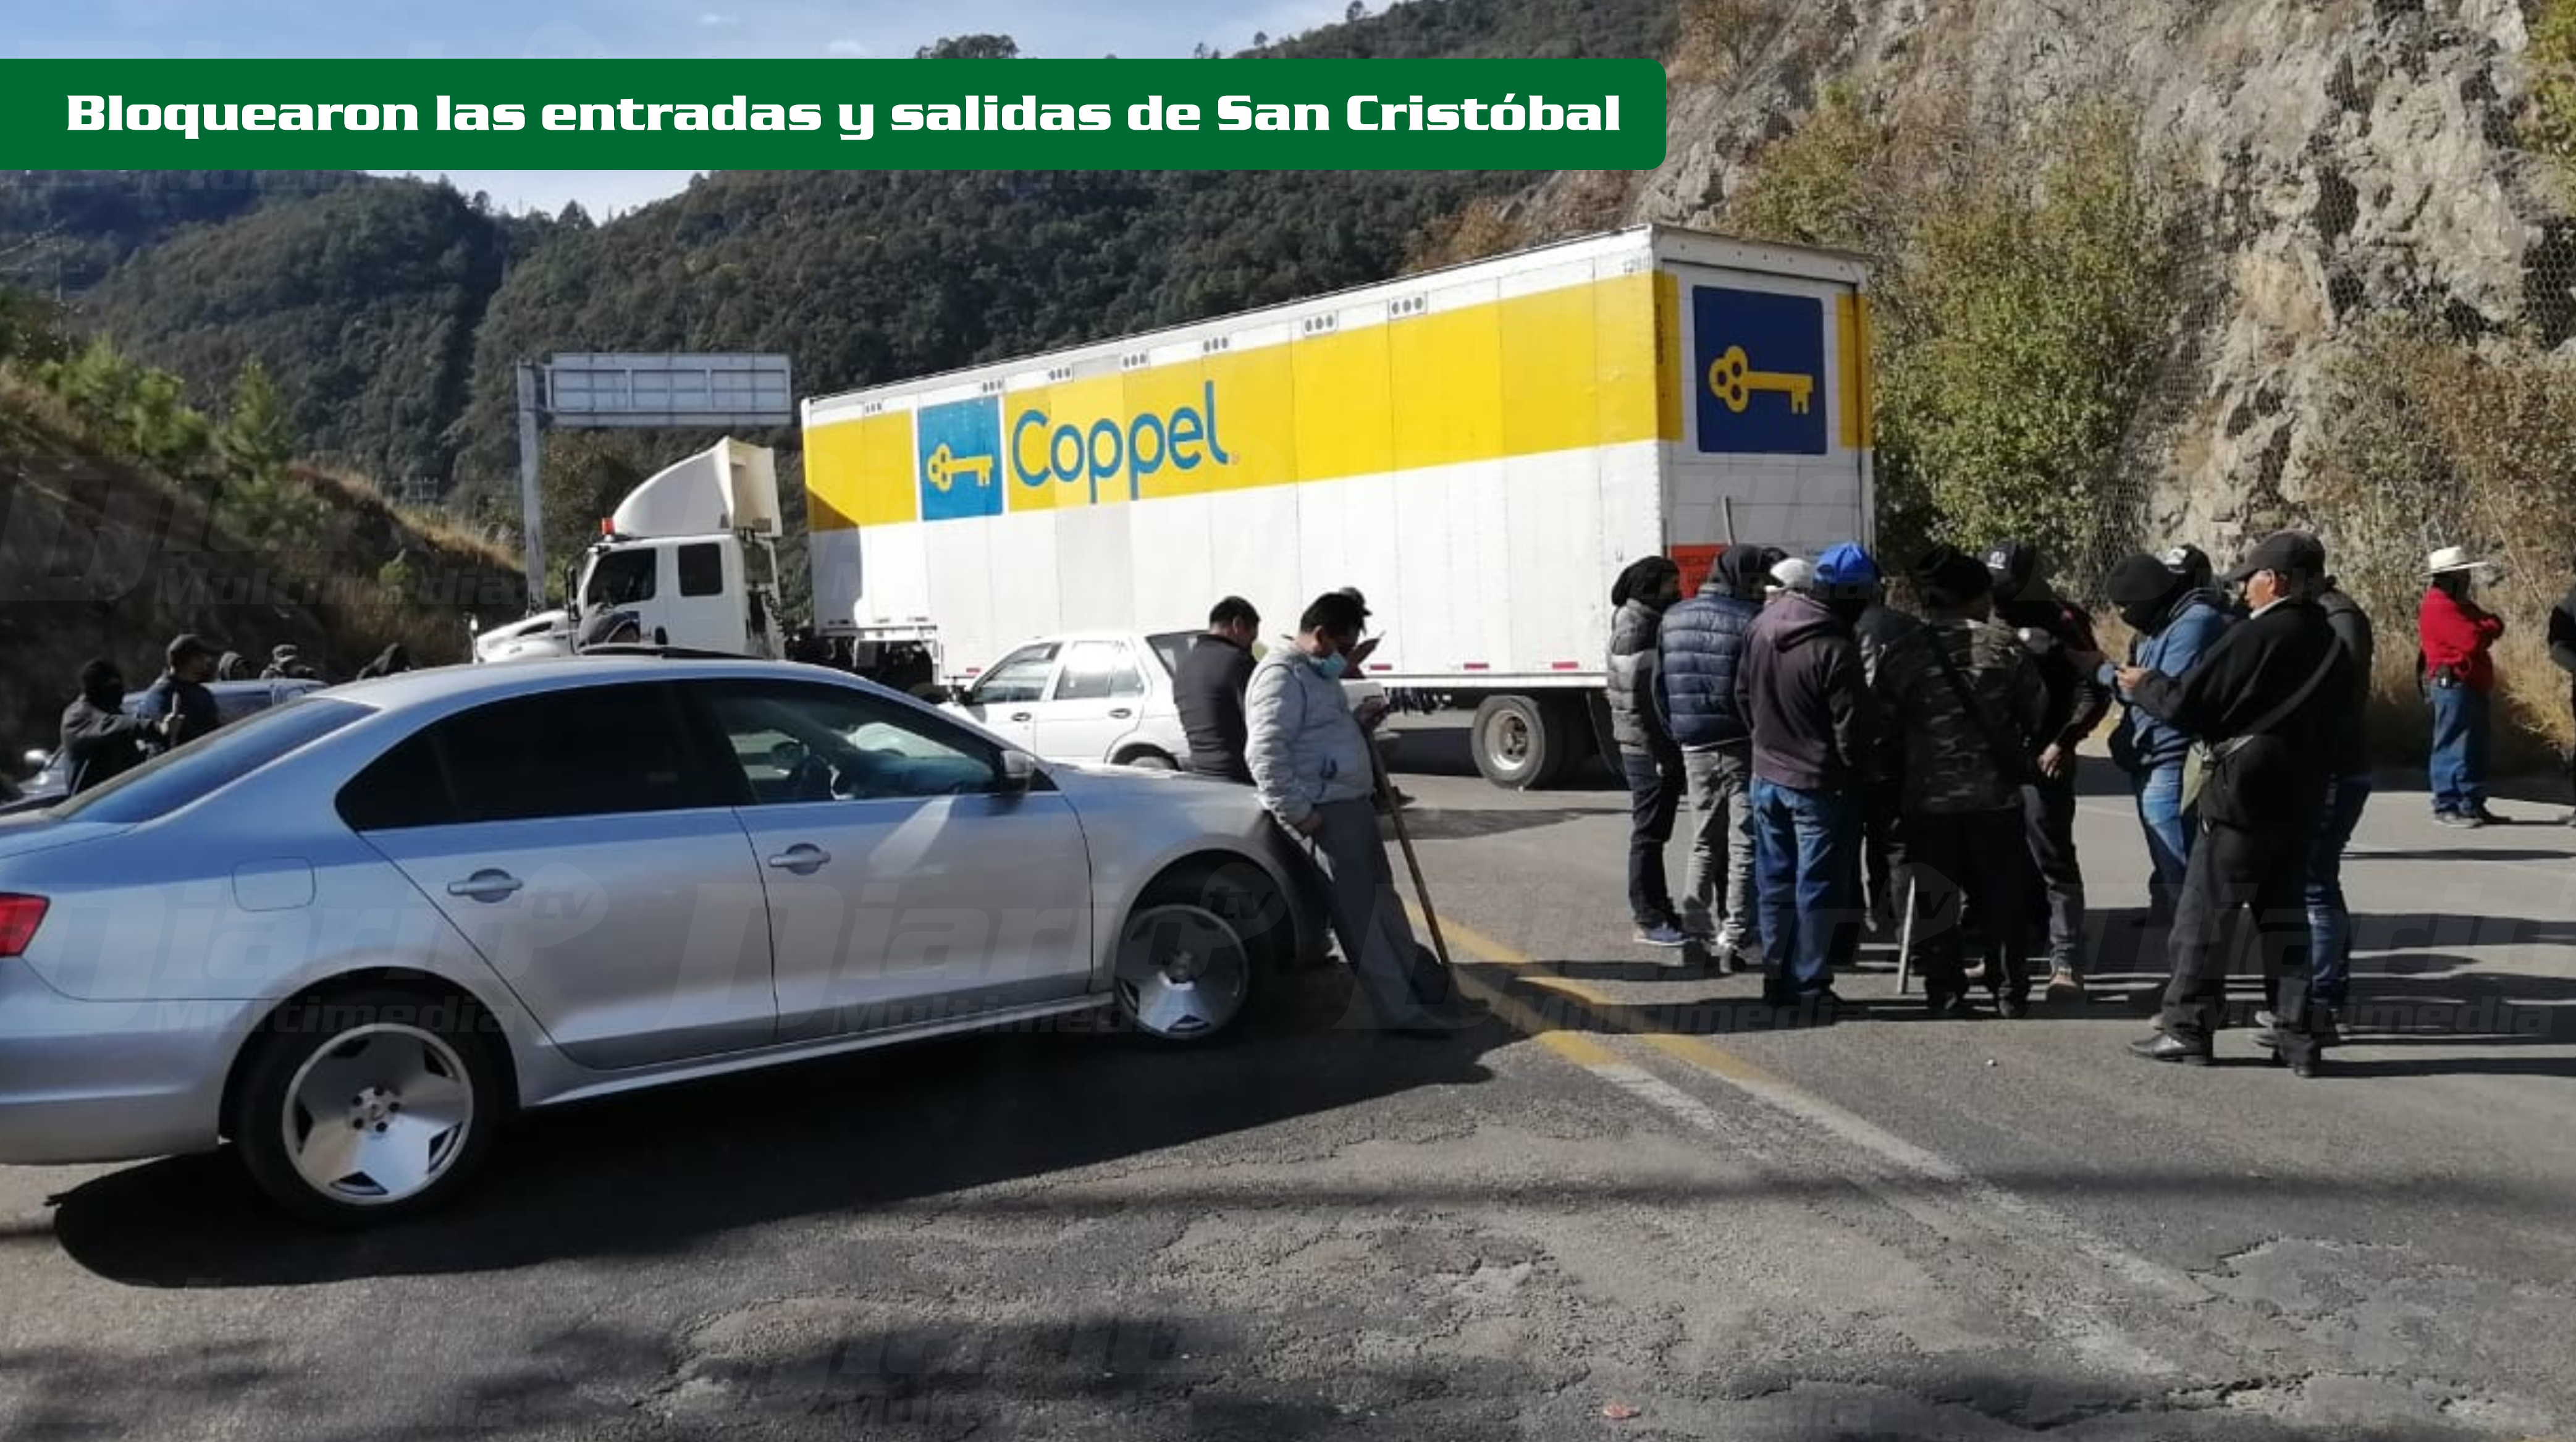 Comach bloquea San Cristóbal - Diario de Chiapas